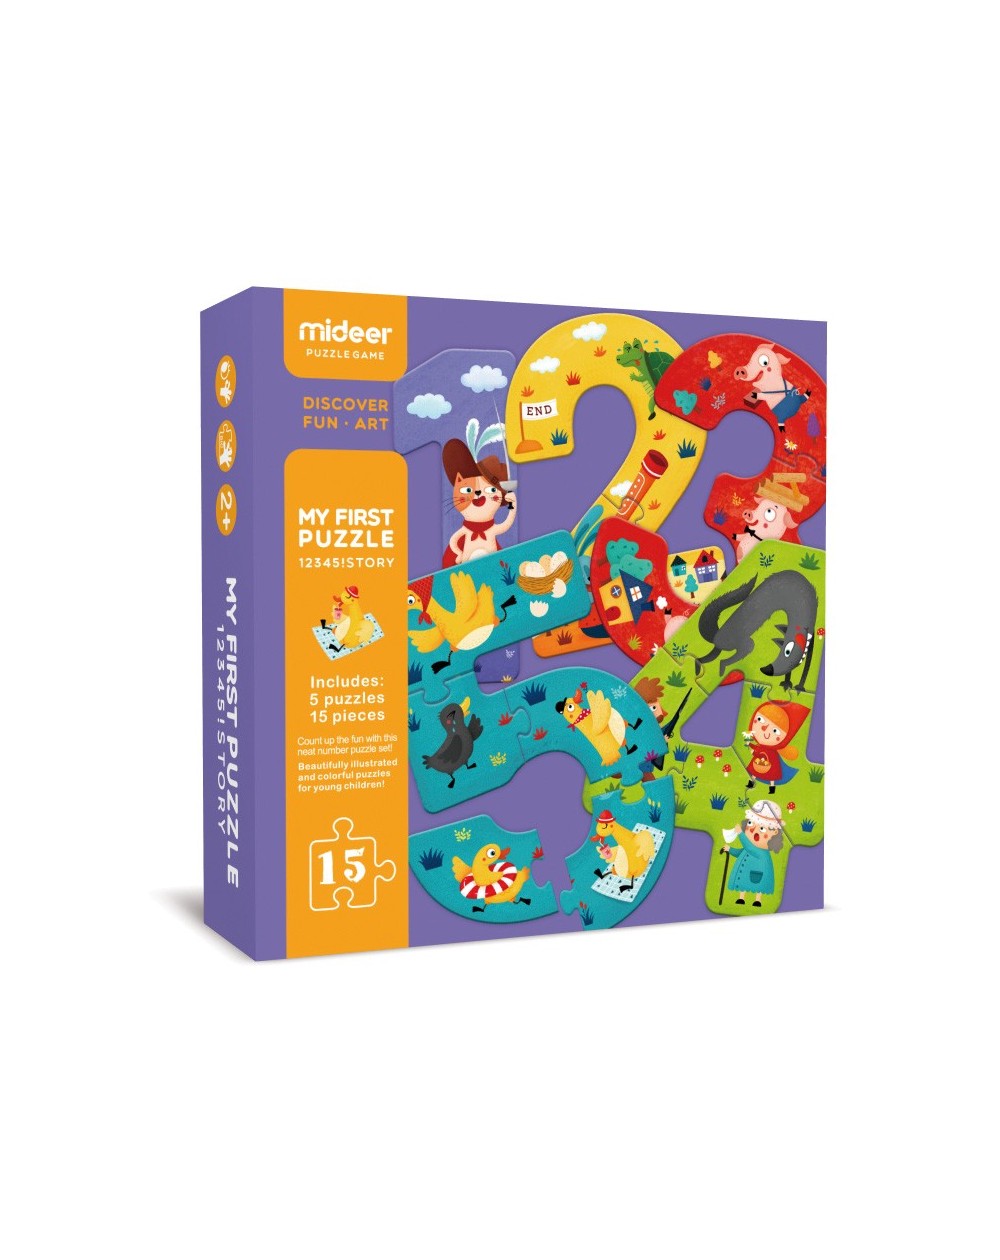 Puzzle de alto contraste - encontra a família - 1 ano, Brinquedos,  Primeiros Puzzles e Jogos, Puzzles - Bazar33